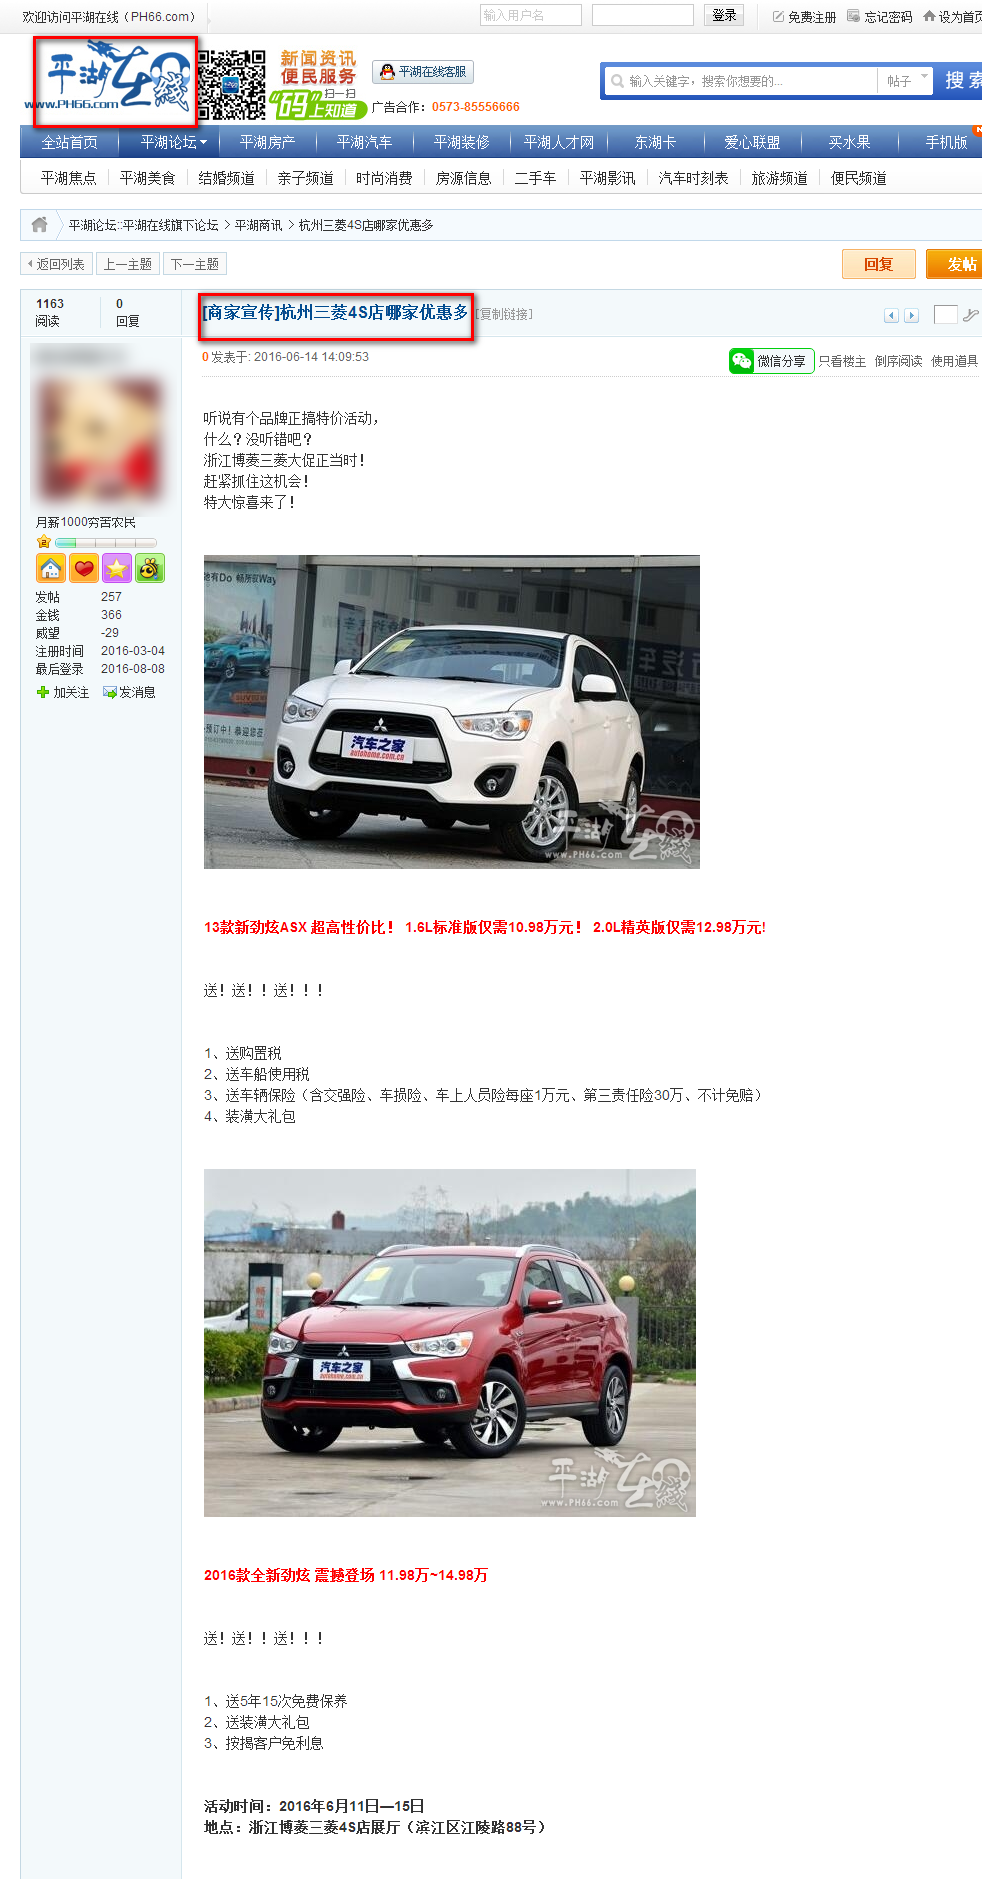 浙江博菱三菱汽车有限公司